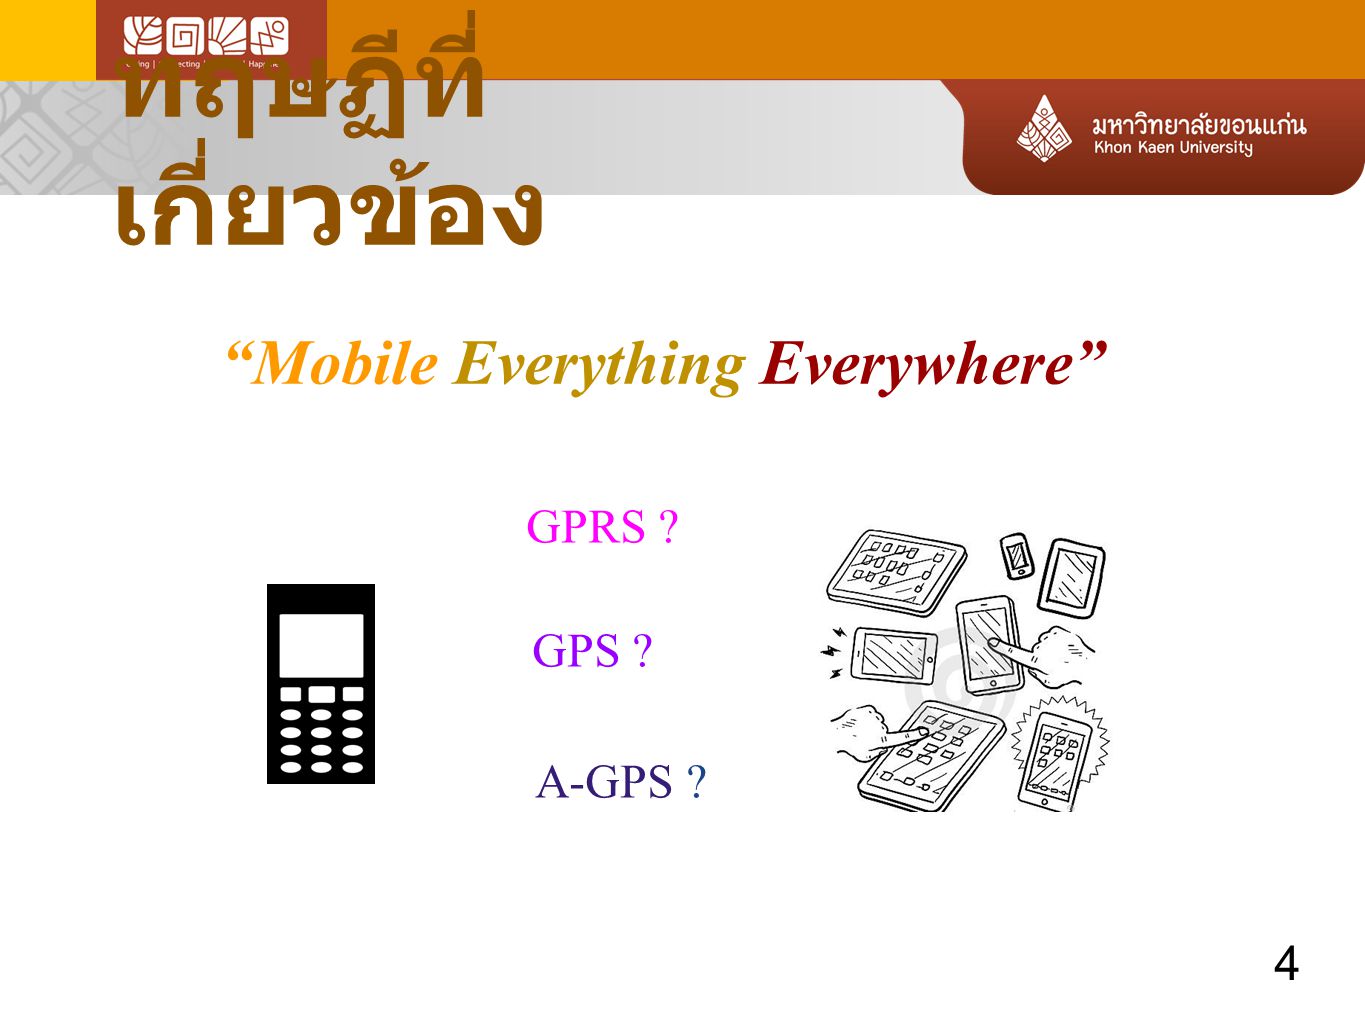 ทฤษฏีที่เกี่ยวข้อง Mobile Everything Everywhere GPRS A-GPS 4